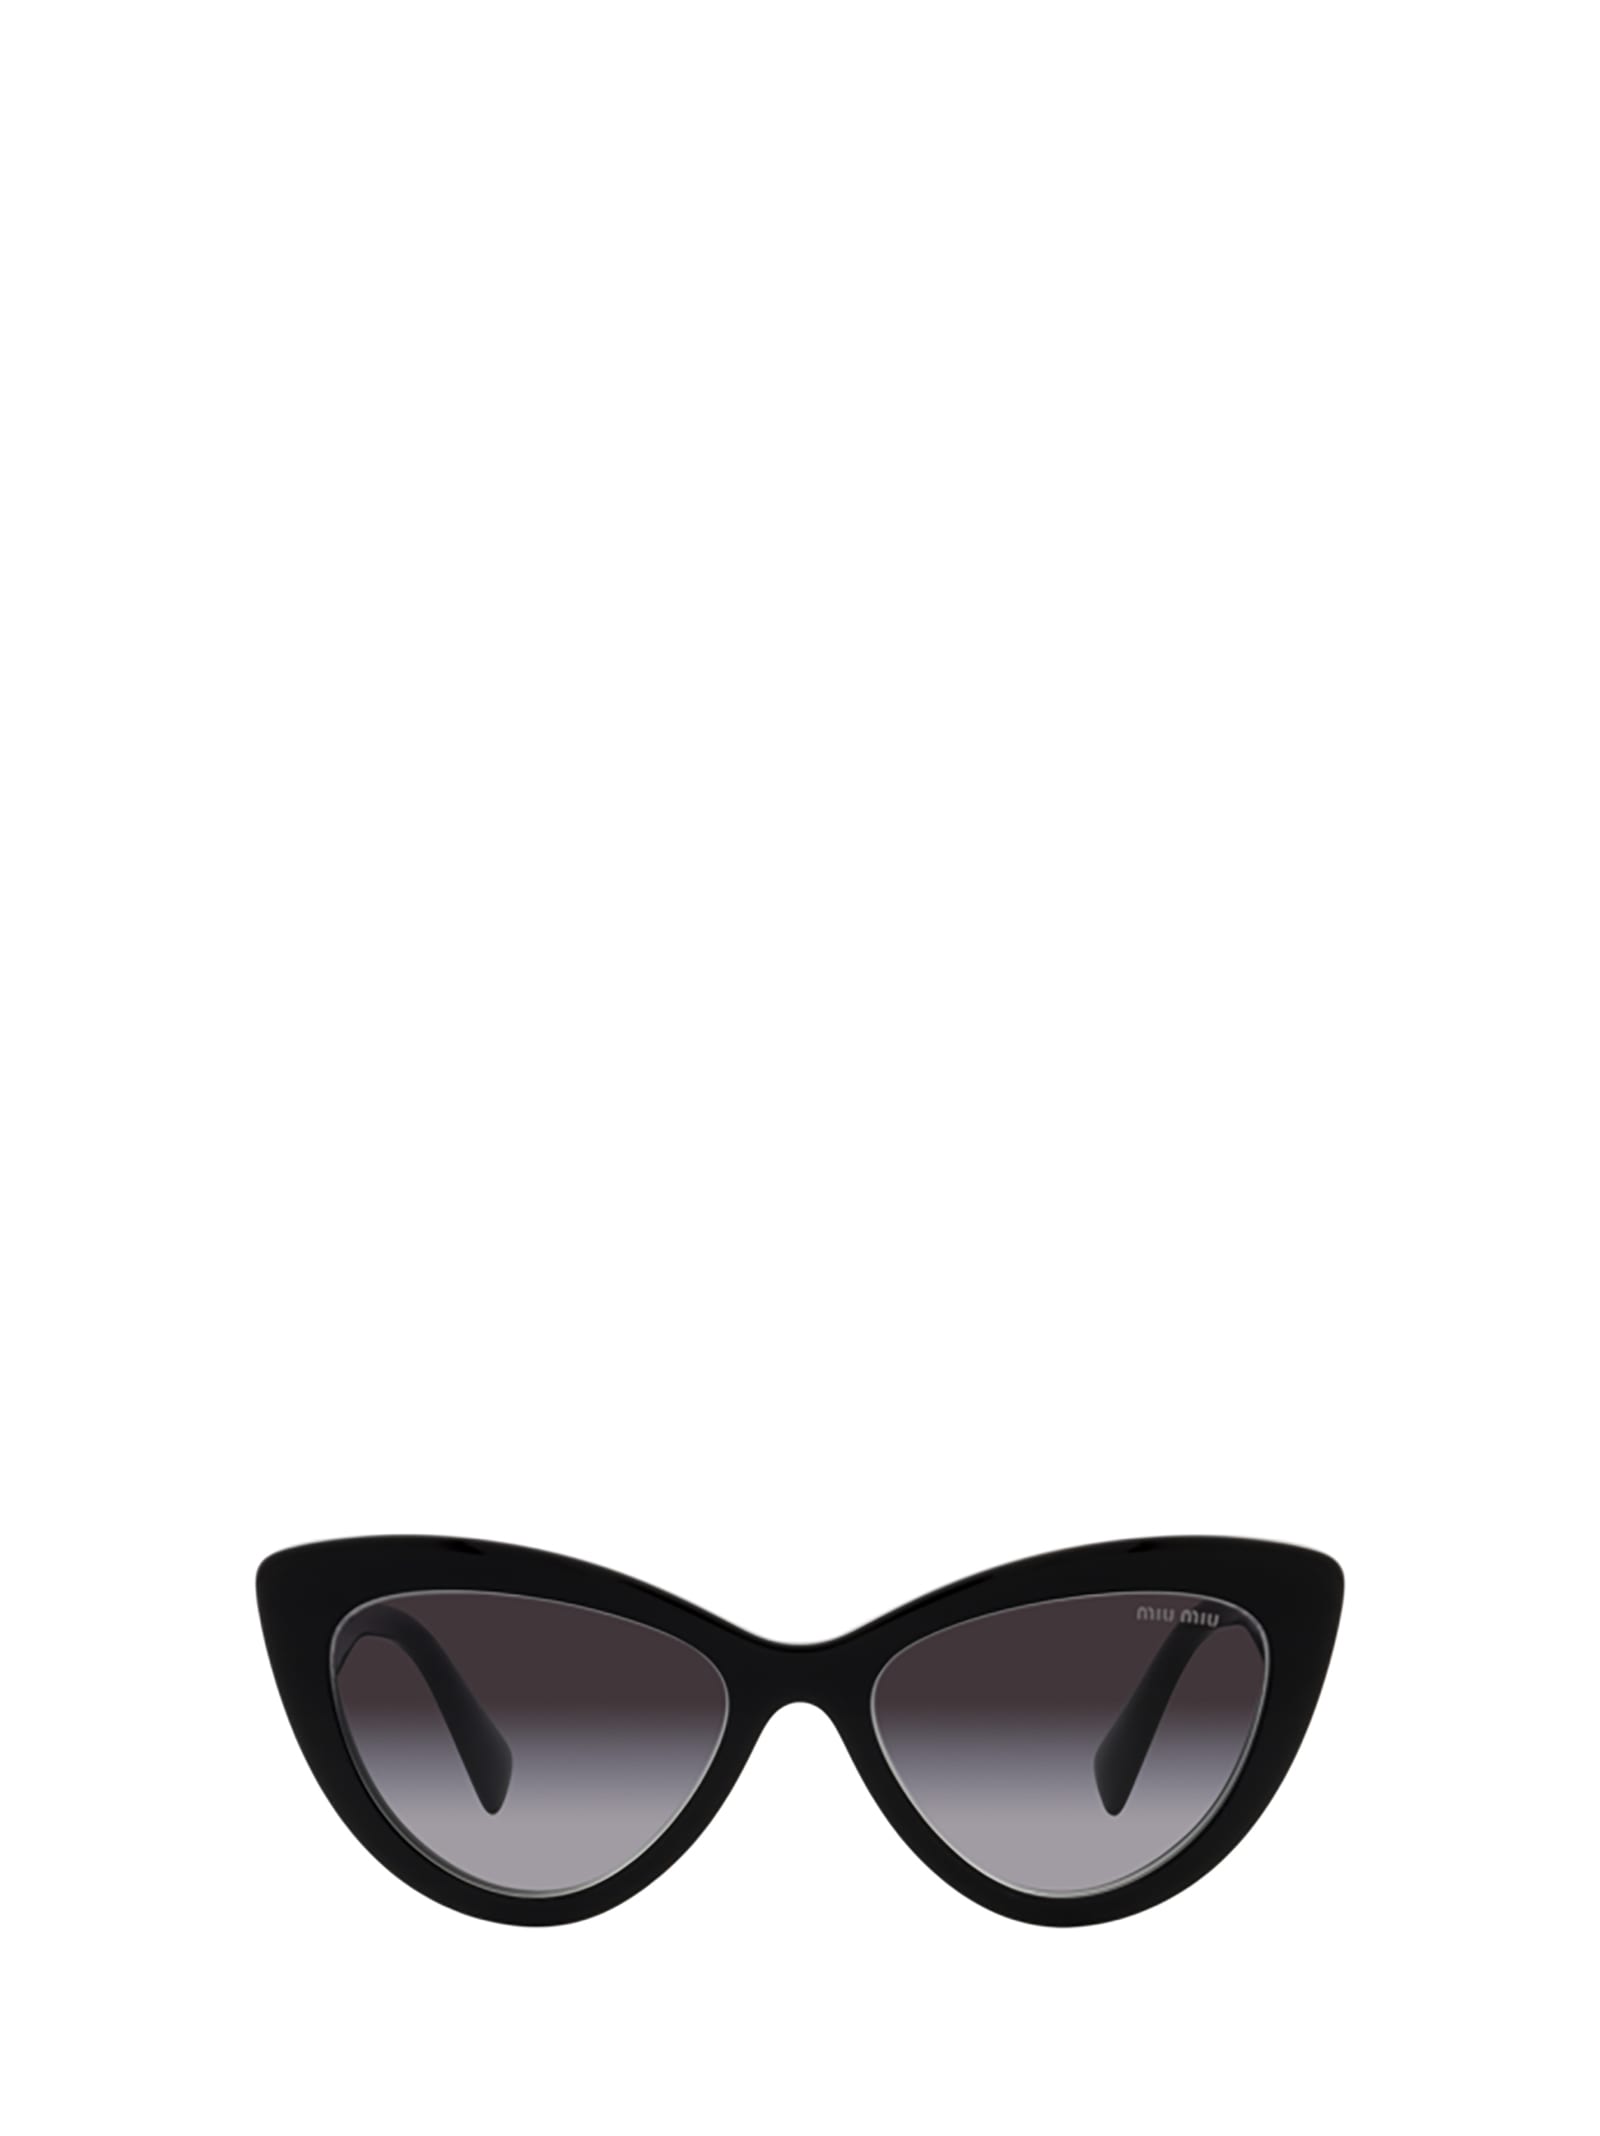 Miu Miu Eyewear Mu 04ys Black Sunglasses